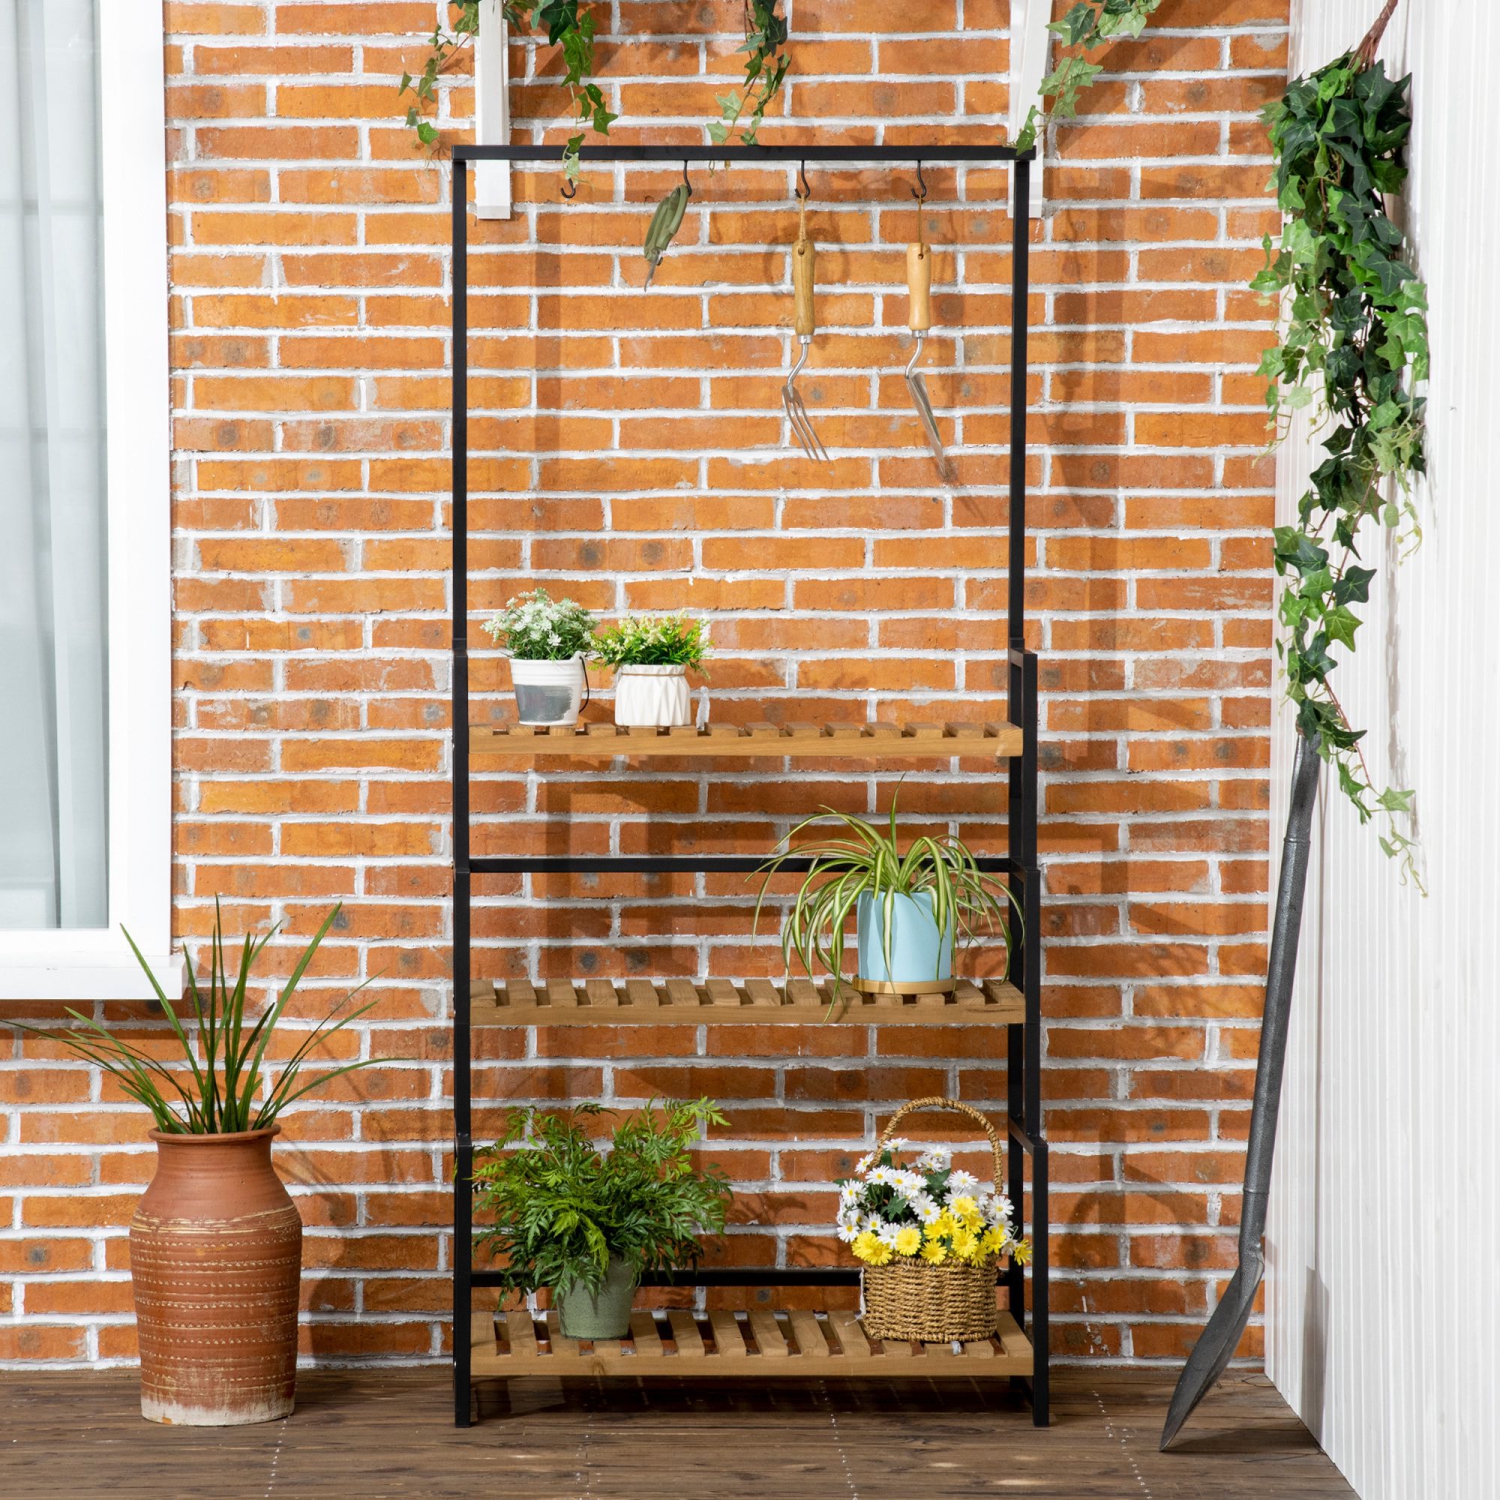 Fabriquer une étagère à plantes pour un balcon étroit - Vertu